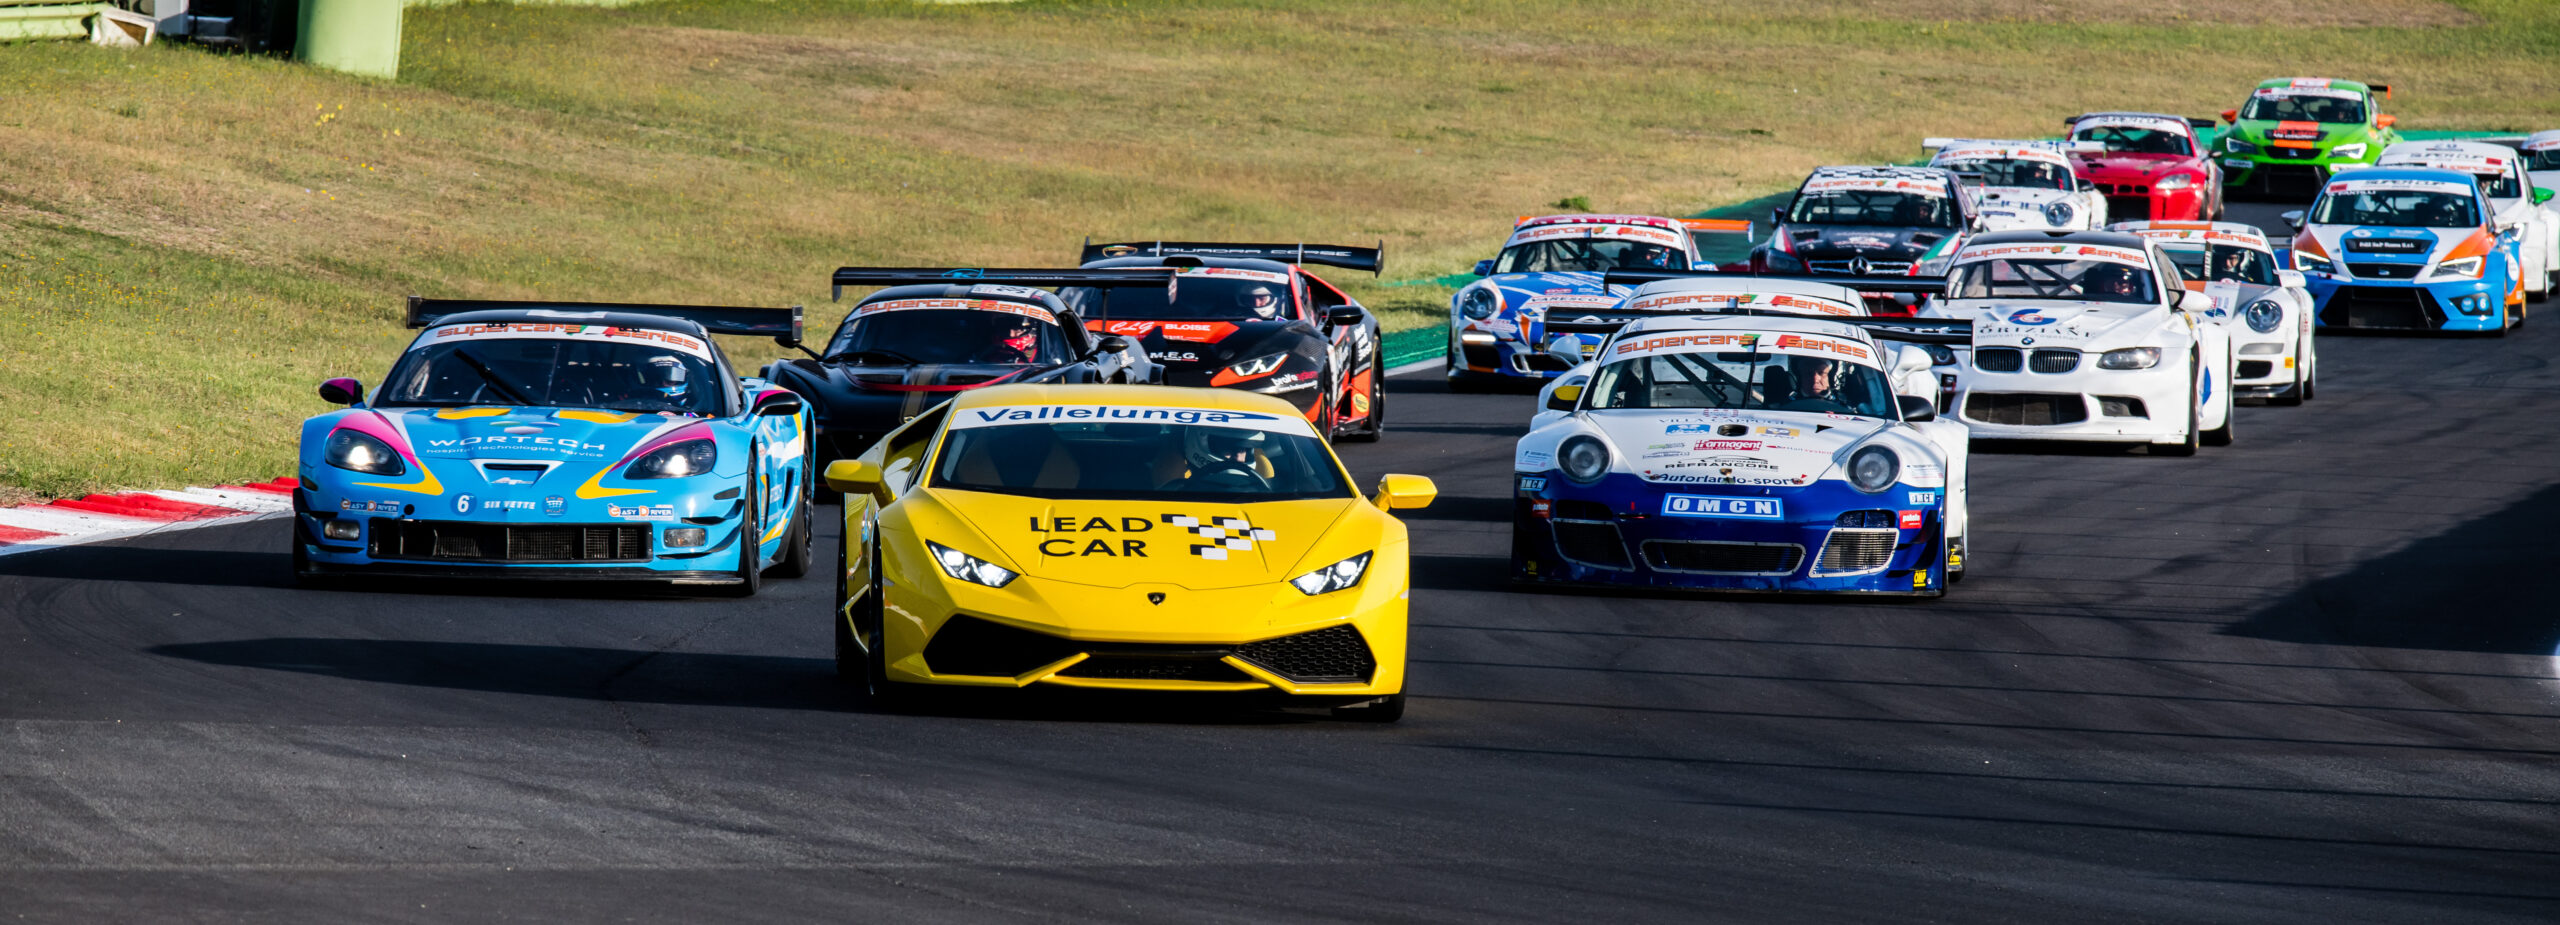 cars racing